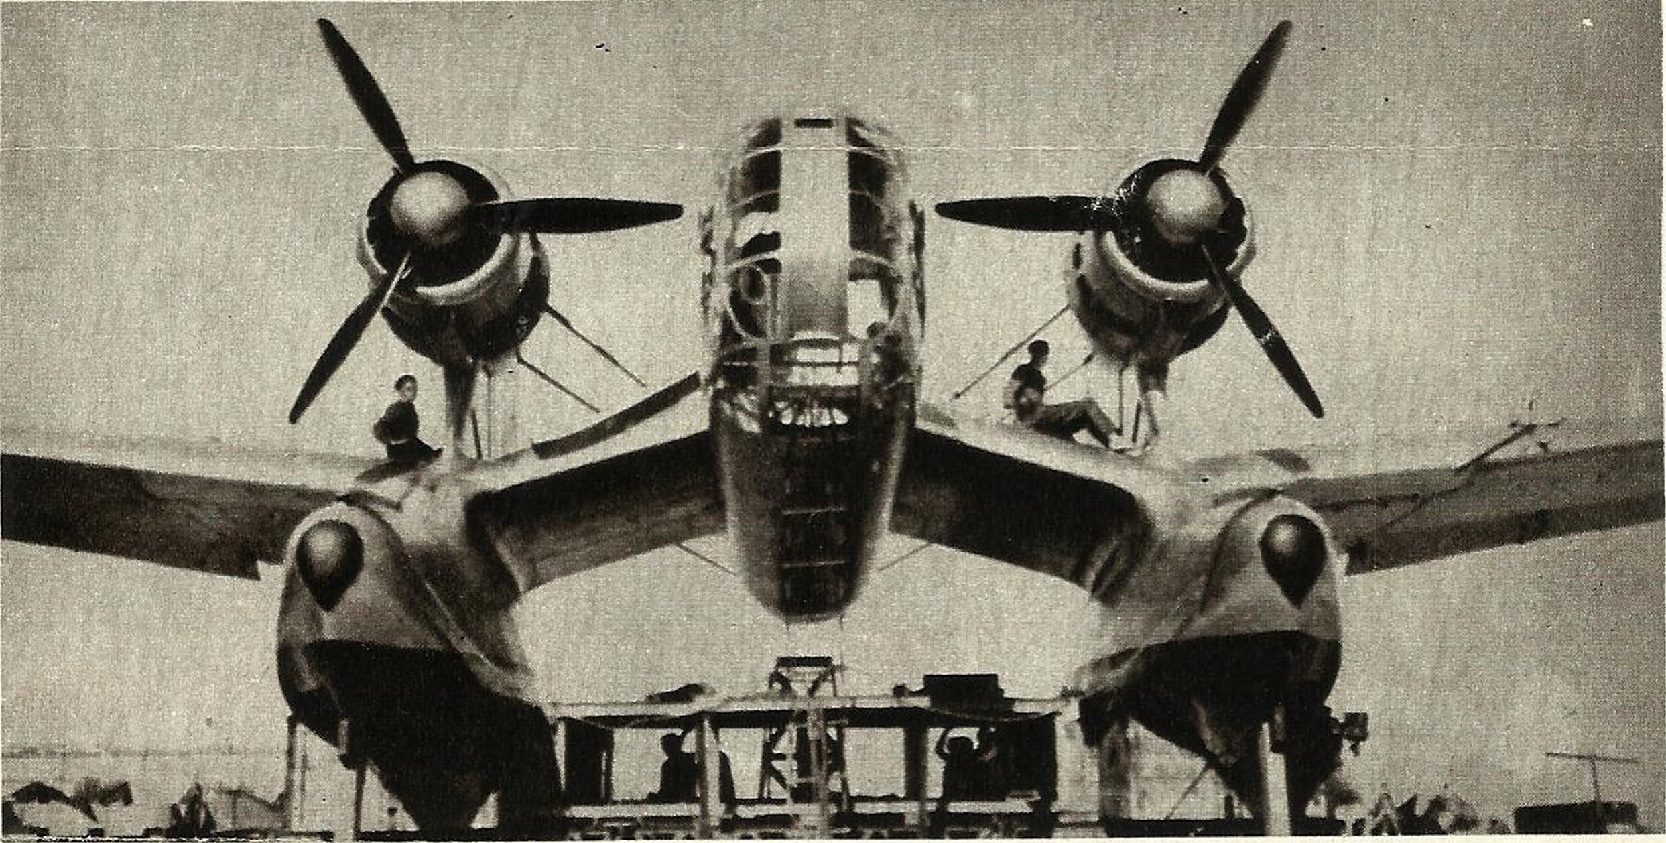 «Боевой и разведывательный гидросамолет». Опытный многоцелевой поплавковый гидросамолет Loire-Nieuport LN-10. Франция Часть 2